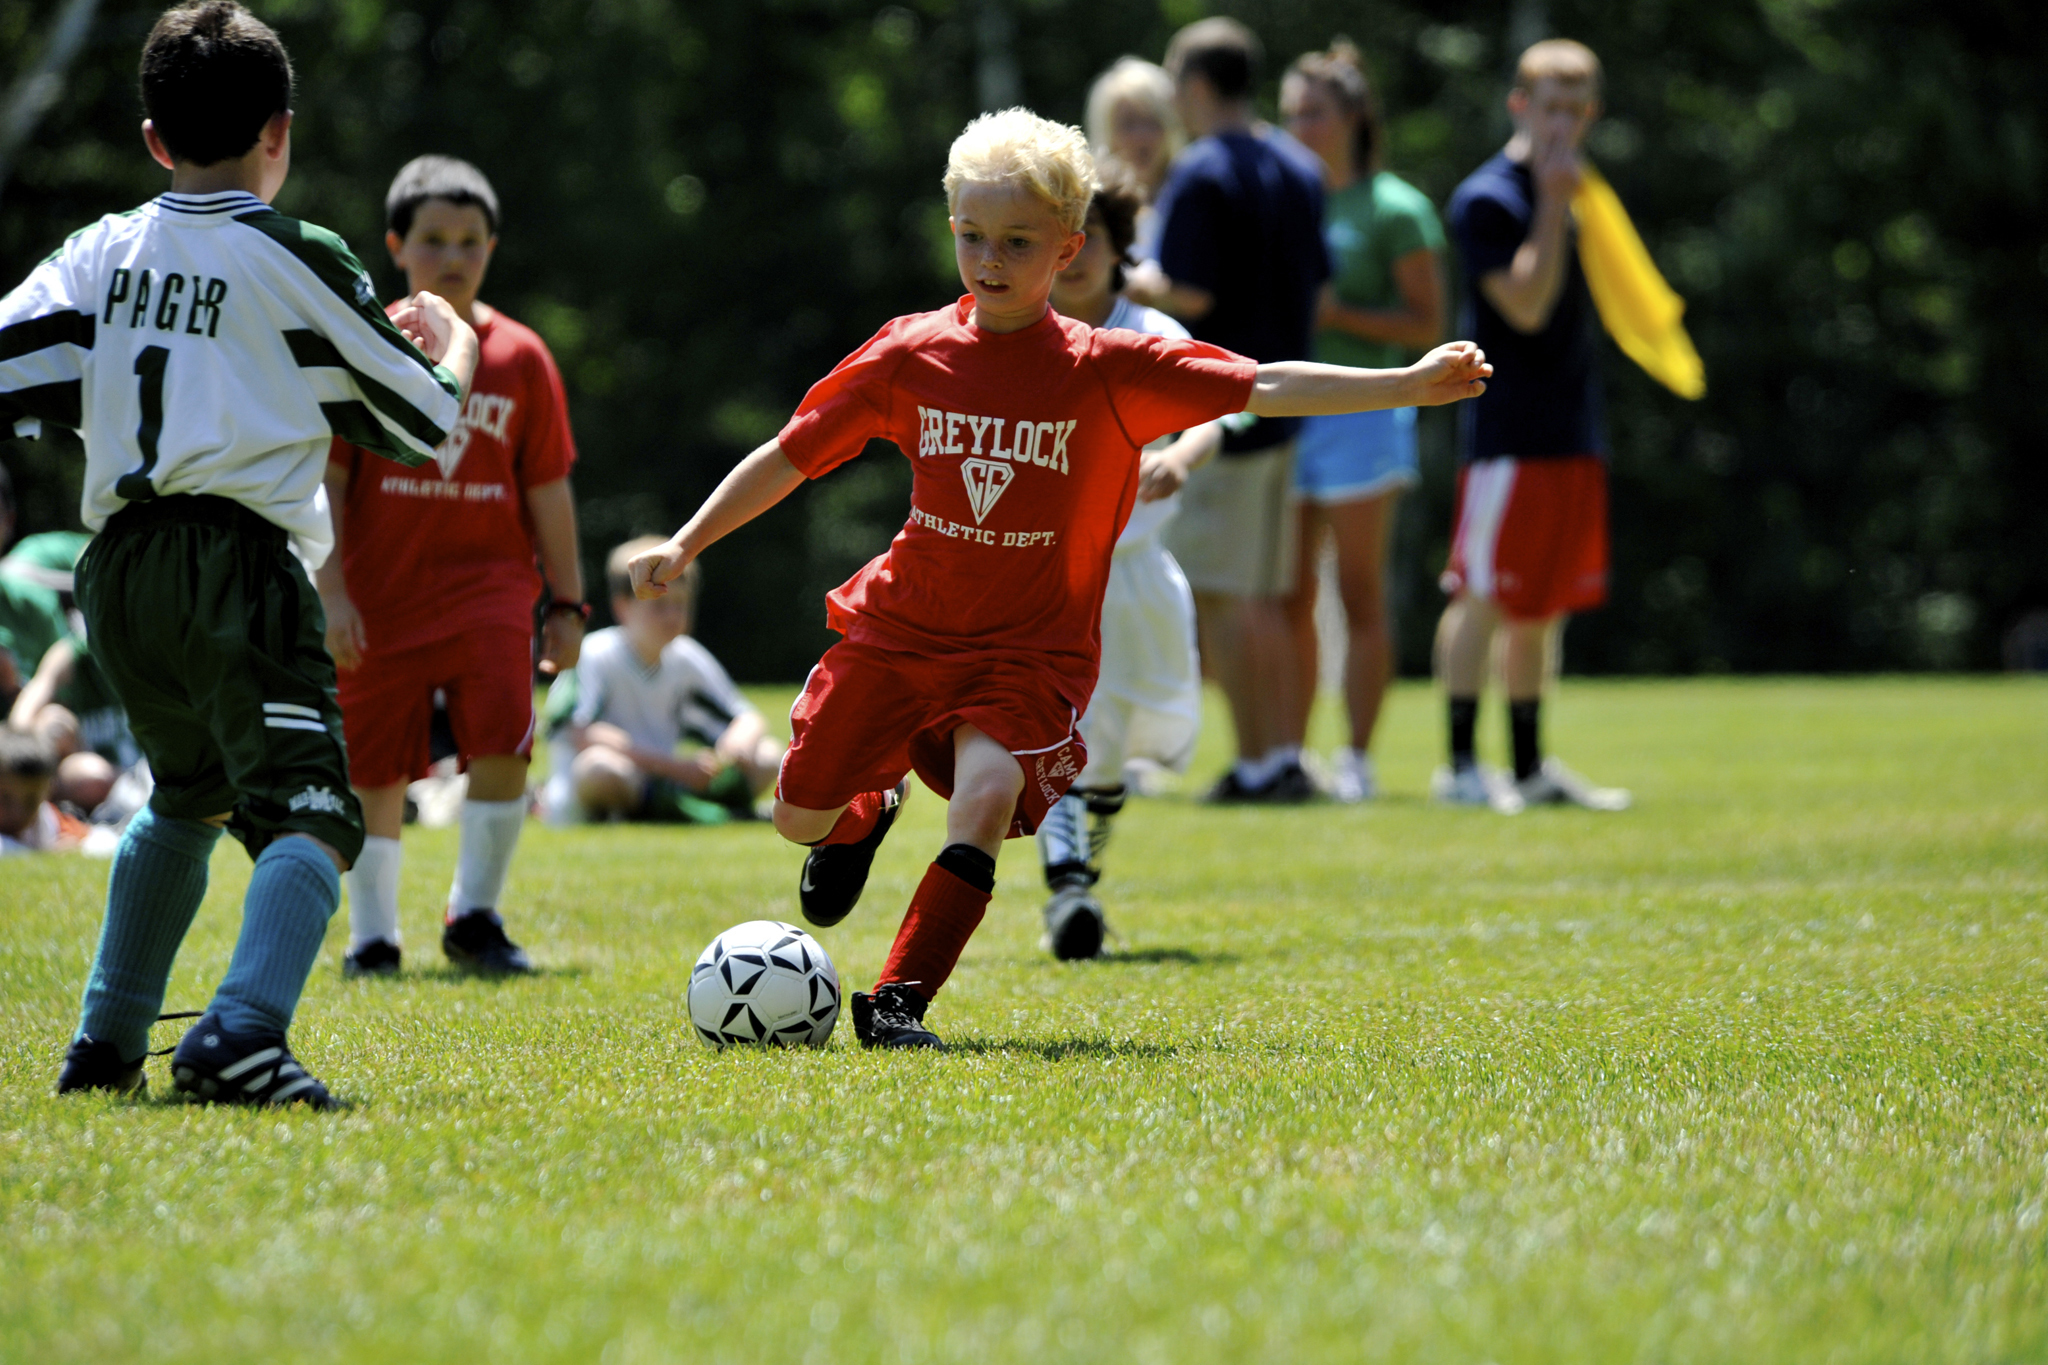 Картинки игры в футбол. Игра футбол. Футбол дети. Дети играющие в футбол. Детский футбол Германия.